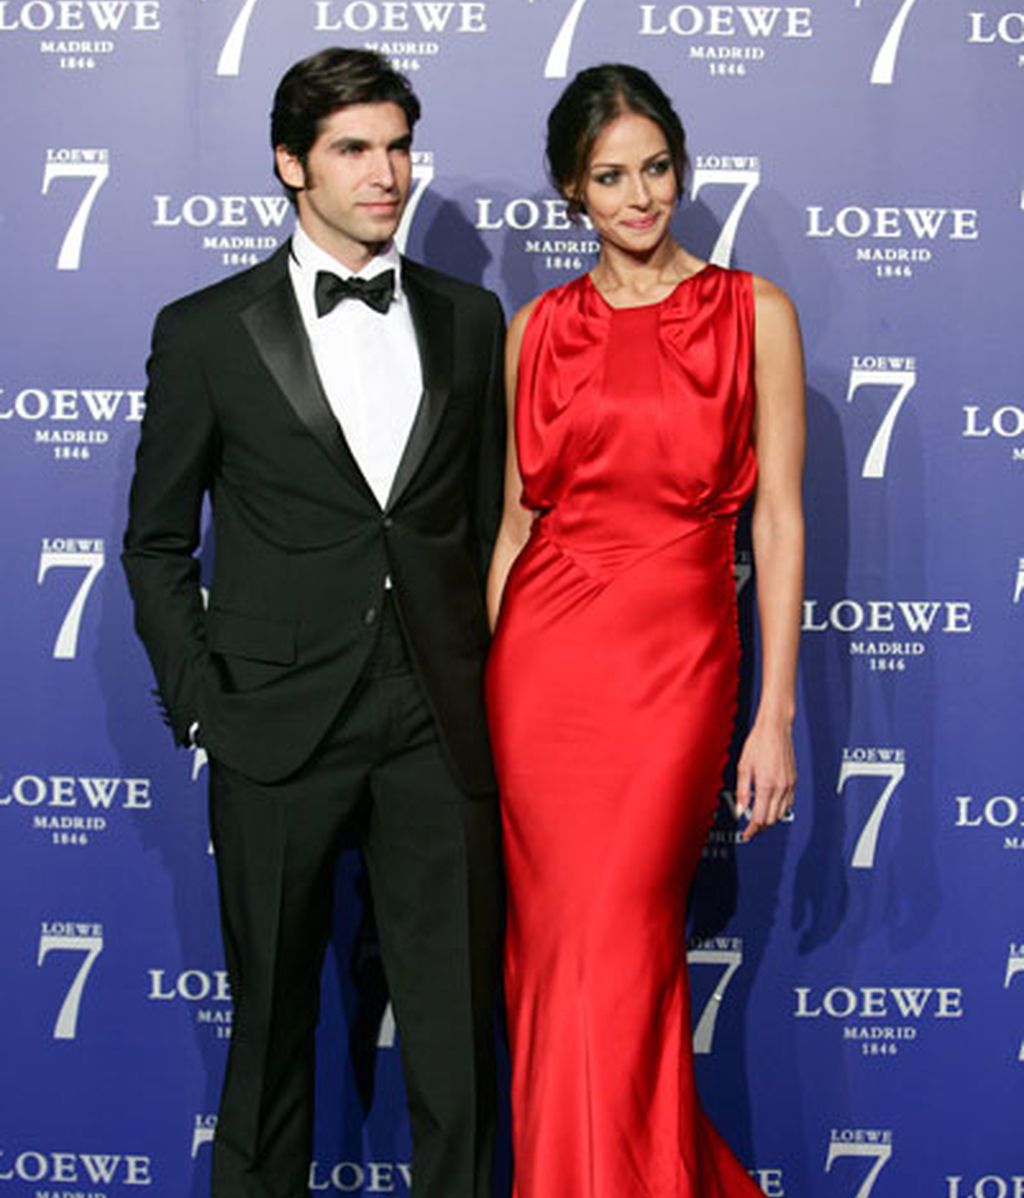 Cayetano Rivera y Eva González, protagonistas de un elenco de lujo en la fiesta de Loewe